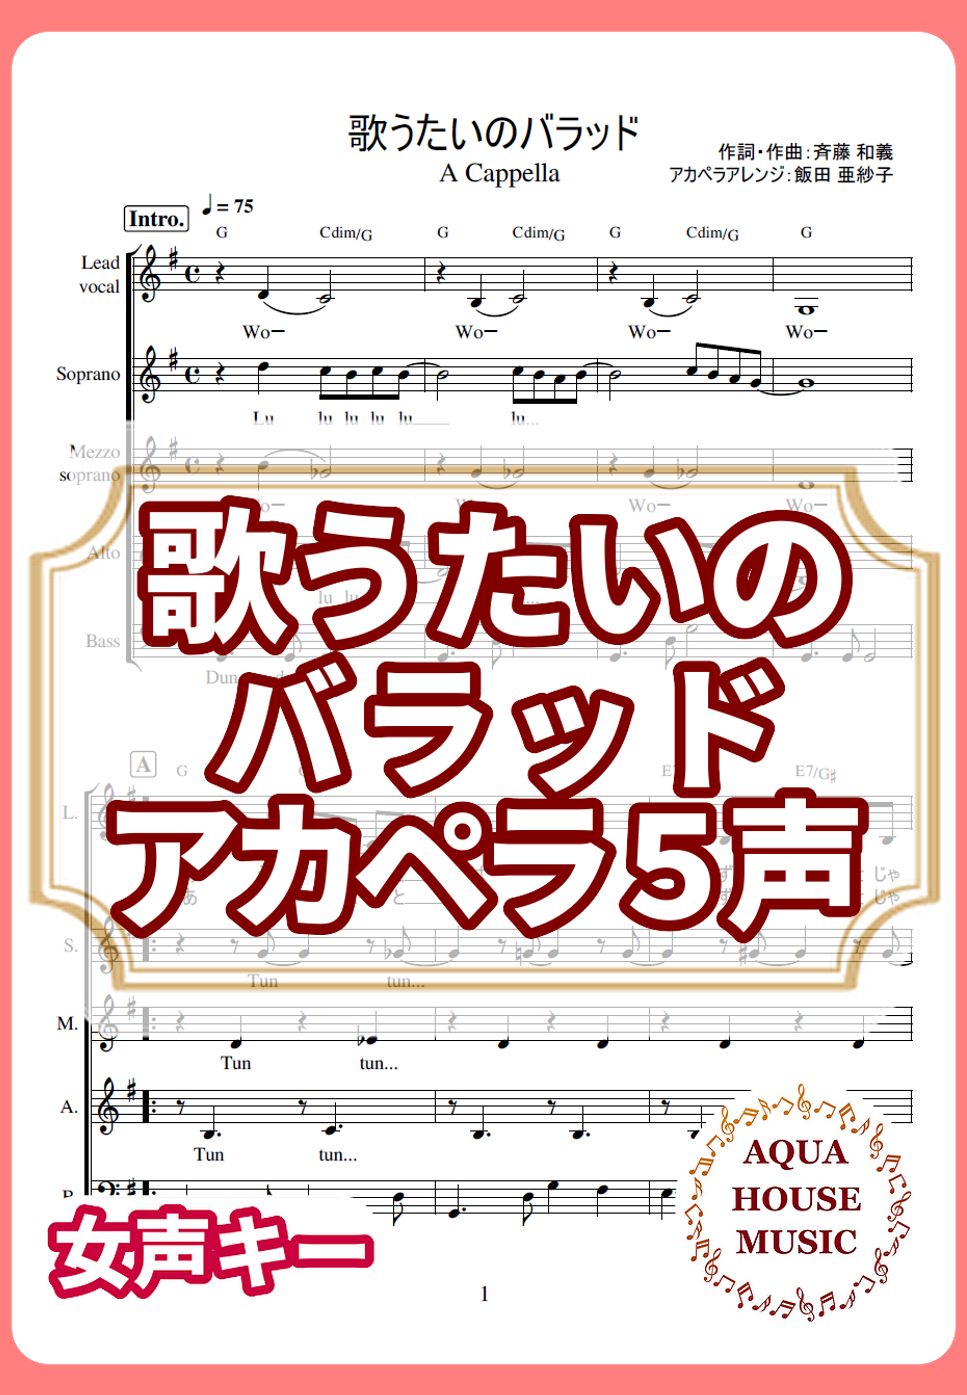 斉藤和義 - 歌うたいのバラッド (アカペラ楽譜♪５声ボイパなし) by 飯田 亜紗子